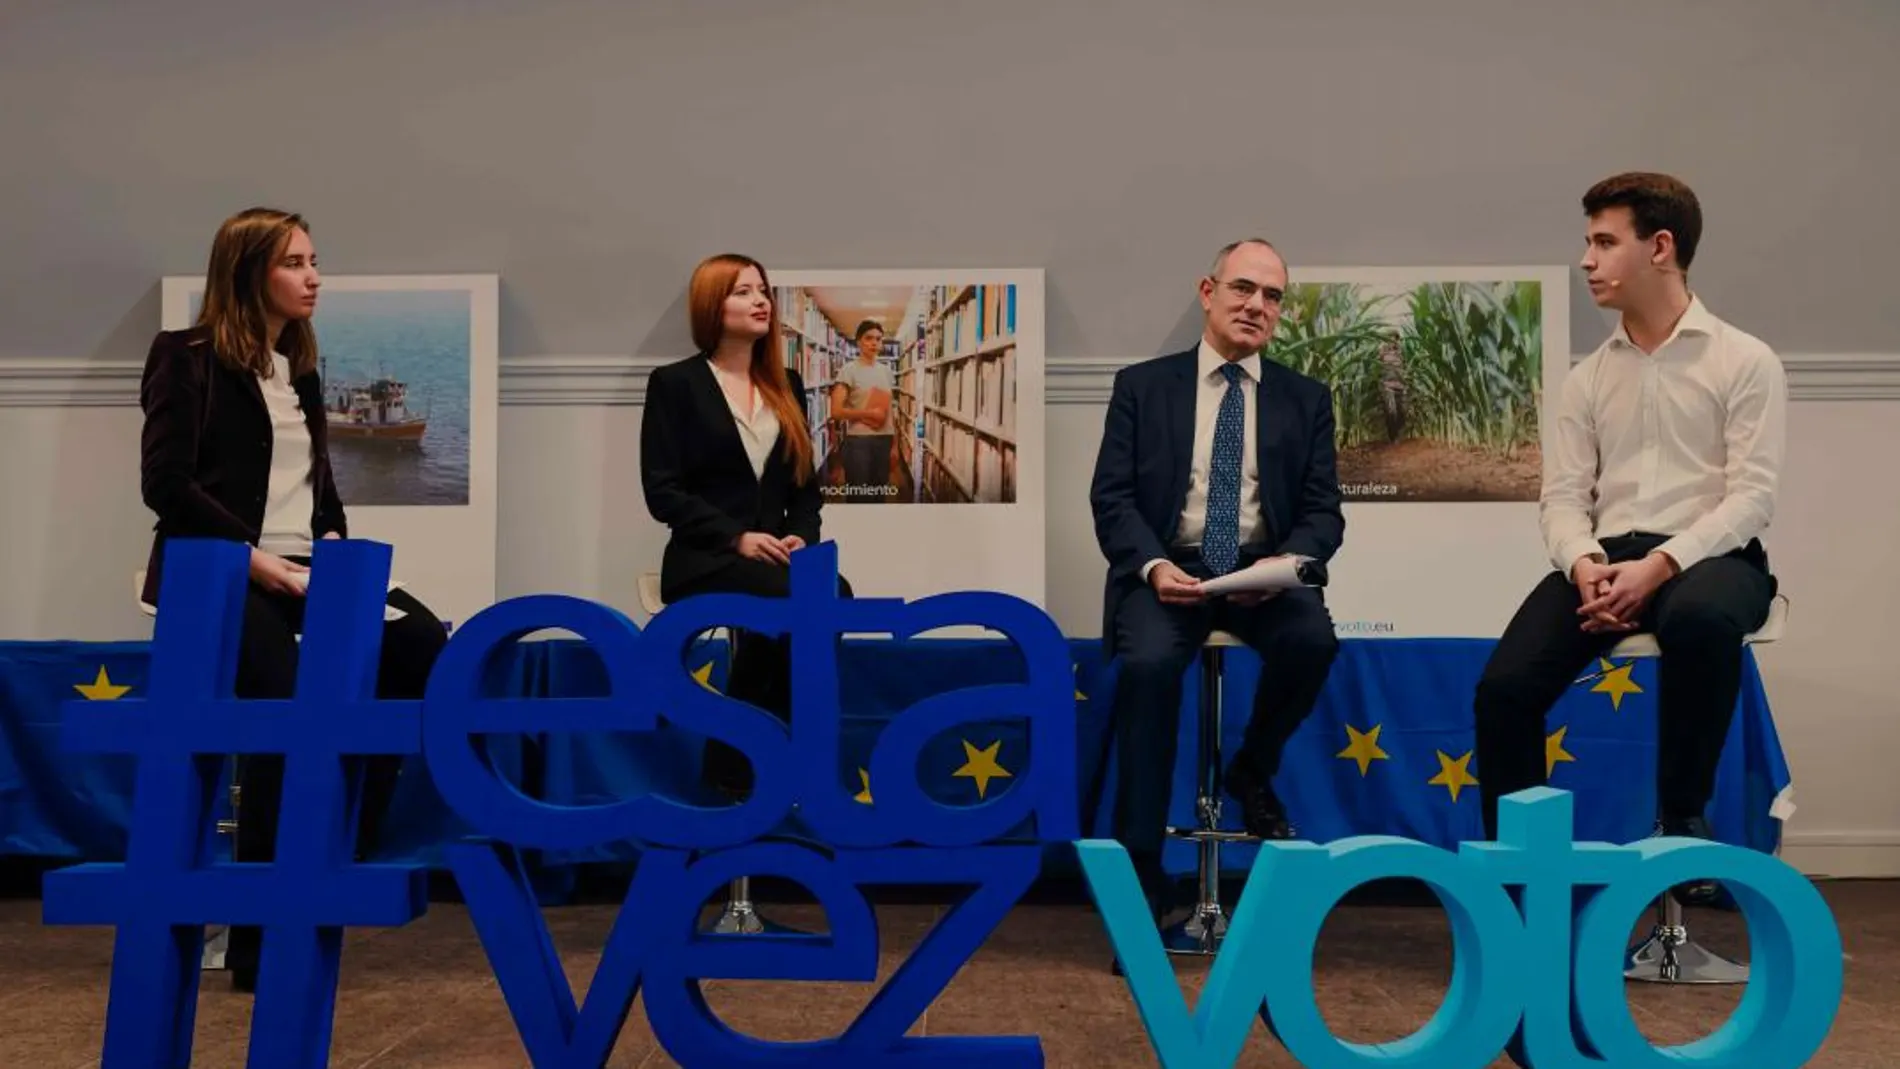 «#Estavezvoto», campaña para movilizar a los jóvenes ante las elecciones europeas